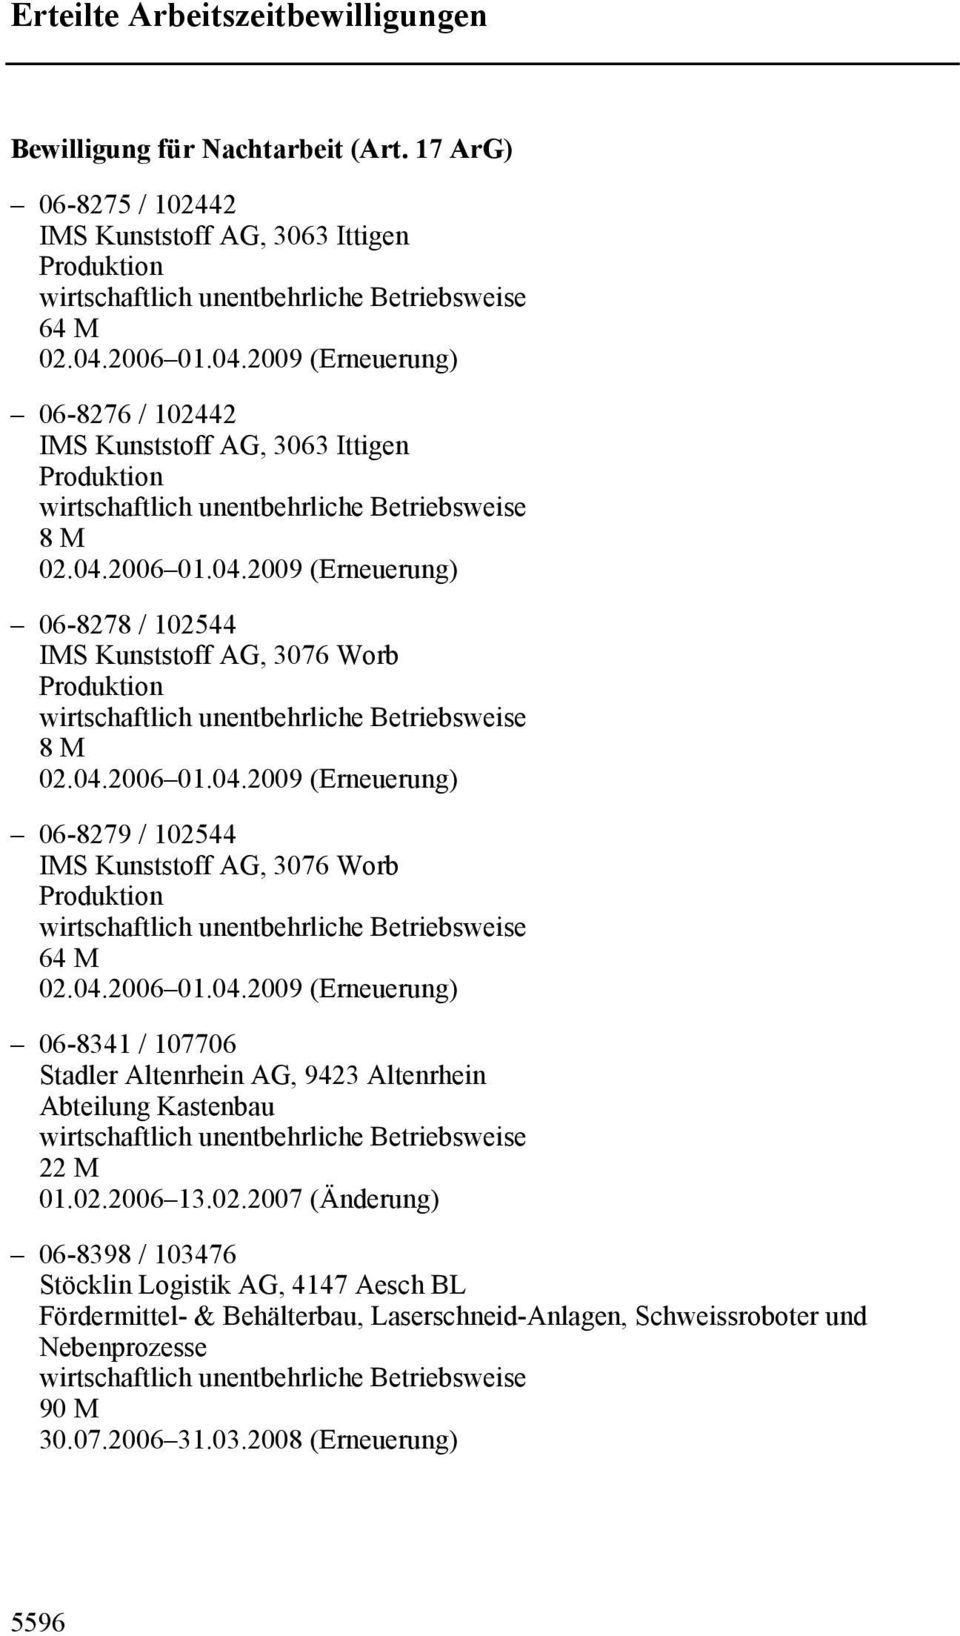 04.2006 01.04.2009 (Erneuerung) 06-8341 / 107706 Stadler Altenrhein AG, 9423 Altenrhein Abteilung Kastenbau 22 M 01.02.